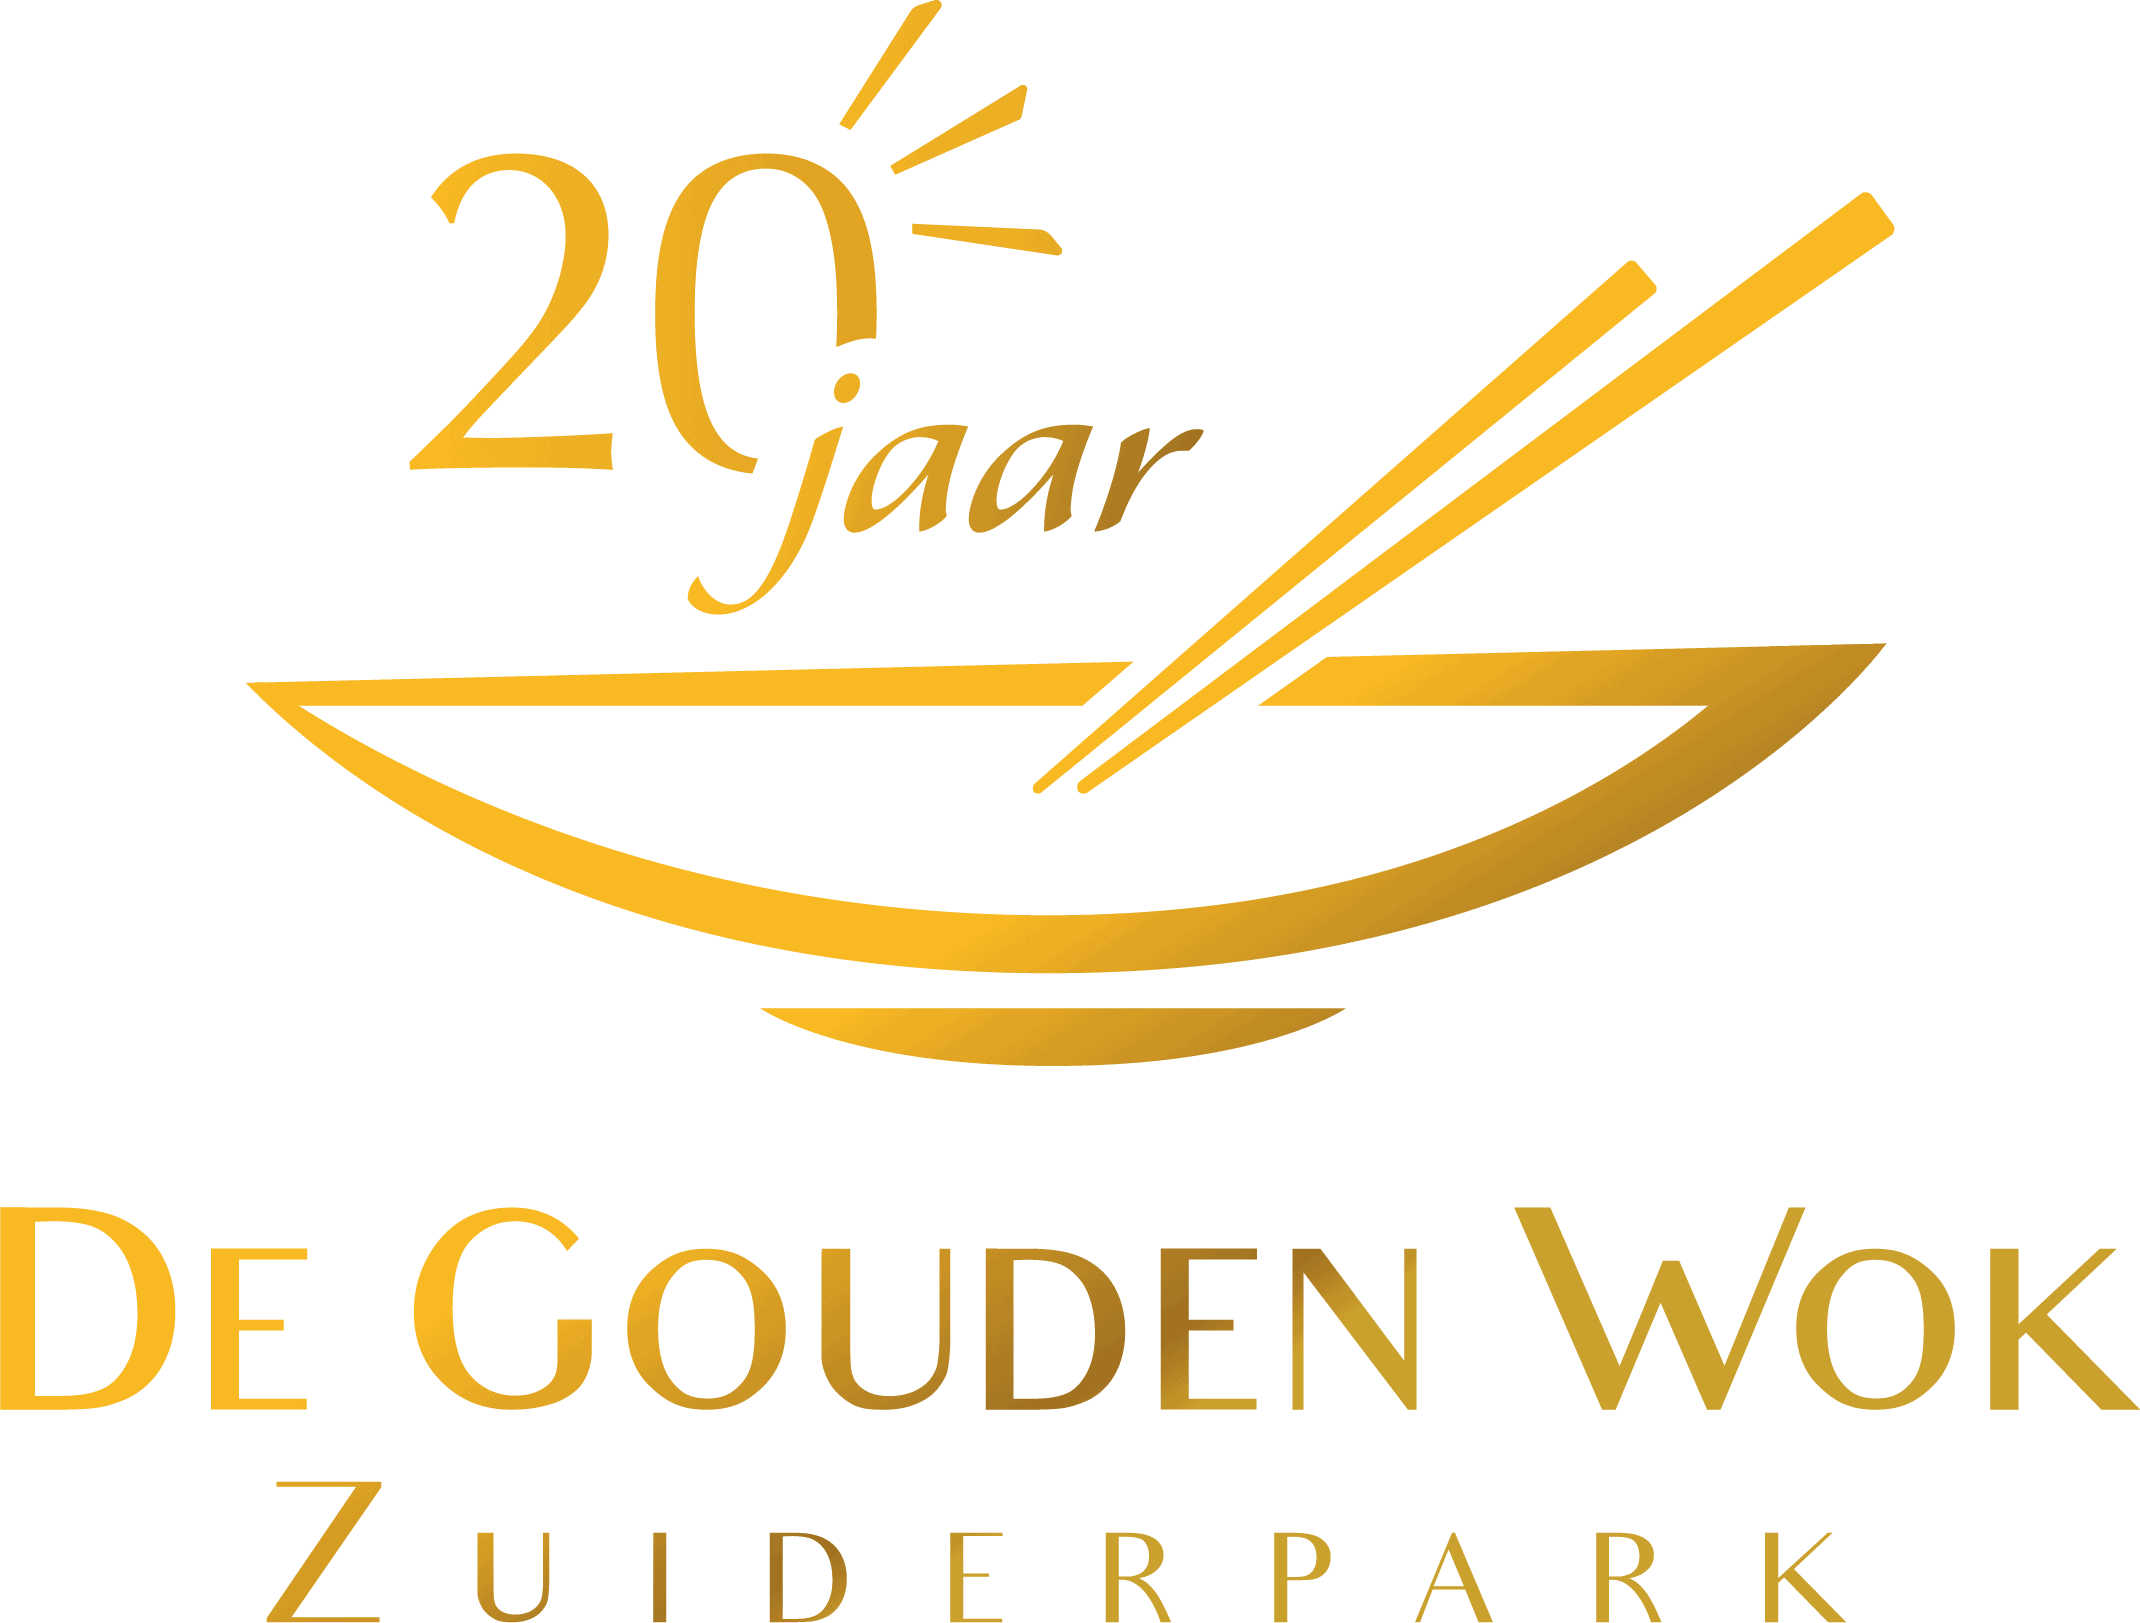 De Gouden Wok Zuiderpark - 20 jaar